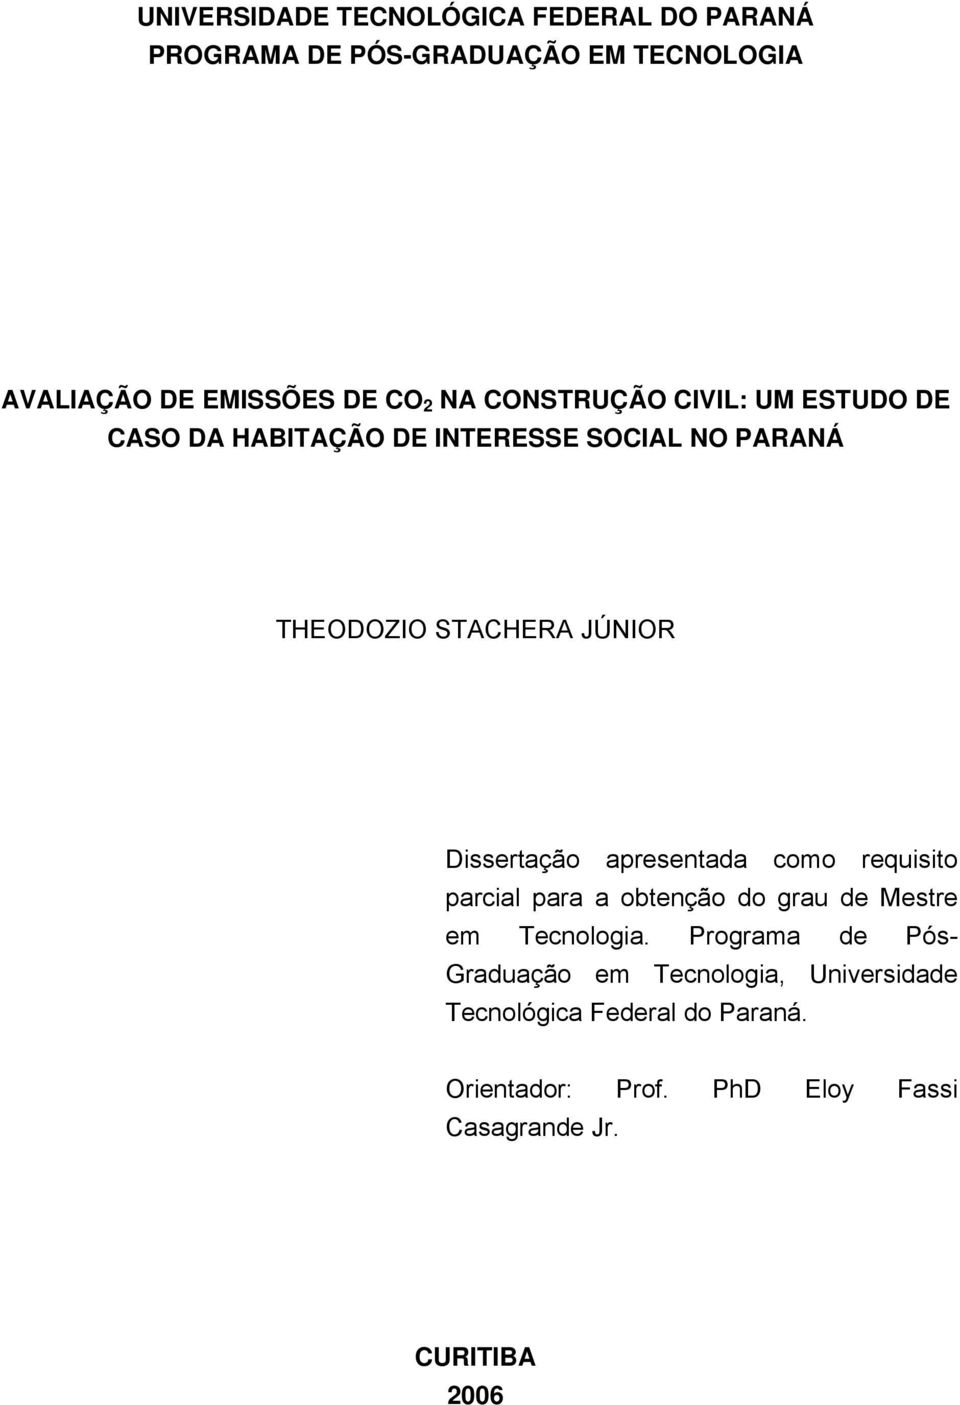 Dissertação apresentada como requisito parcial para a obtenção do grau de Mestre em Tecnologia.